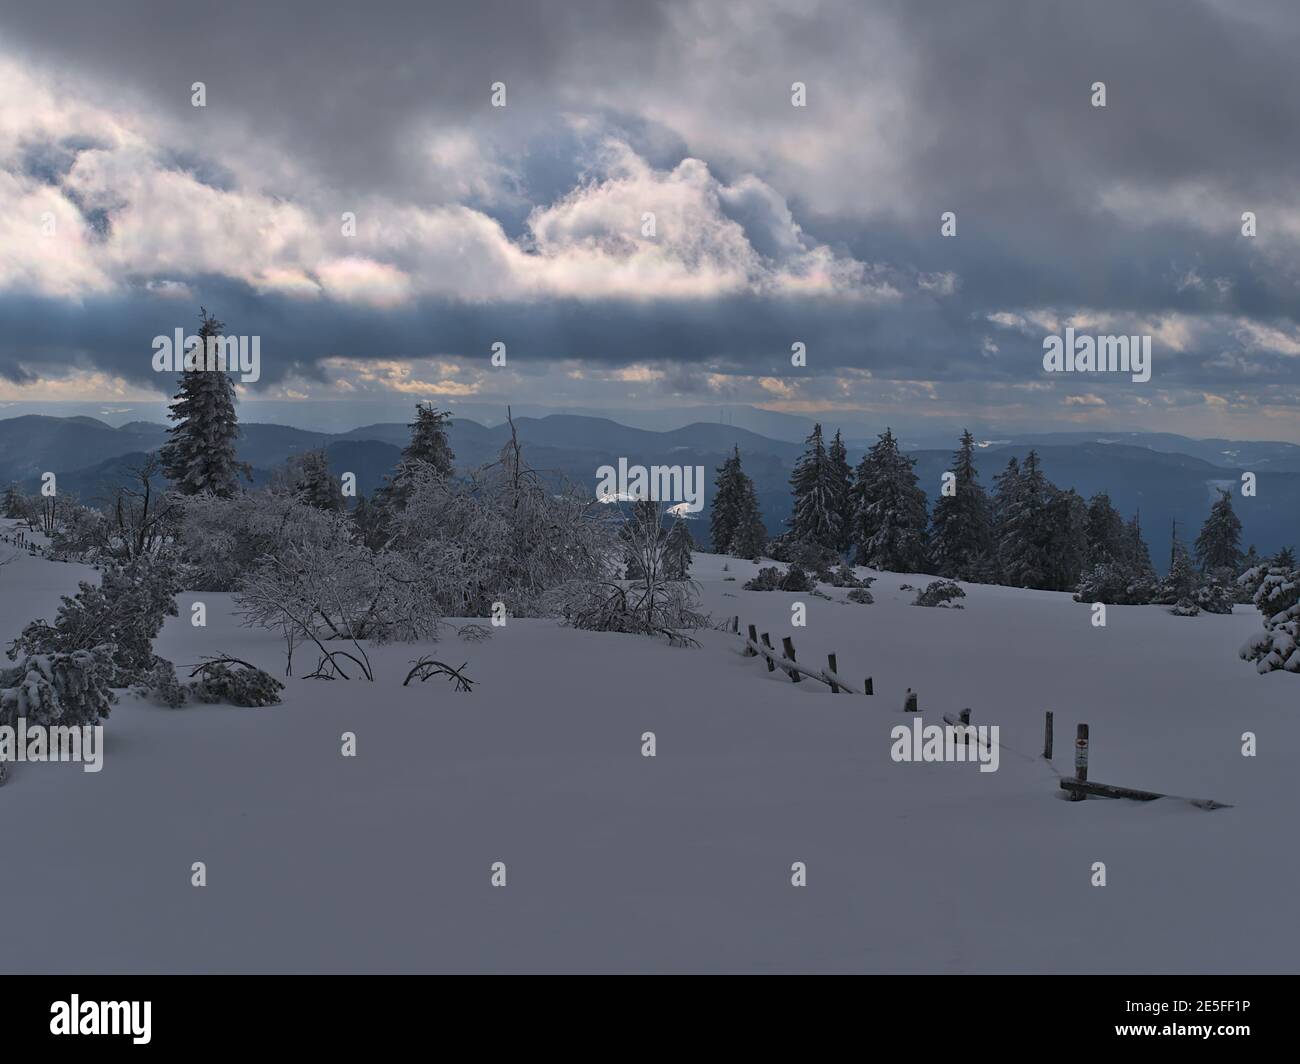 Wunderschöne Winterlandschaft mit Holzzaun bedeckt von tiefem Schnee, gefrorenen Bäumen und herrlichem Panoramablick über die Niedergebirge Schwarzwald. Stockfoto